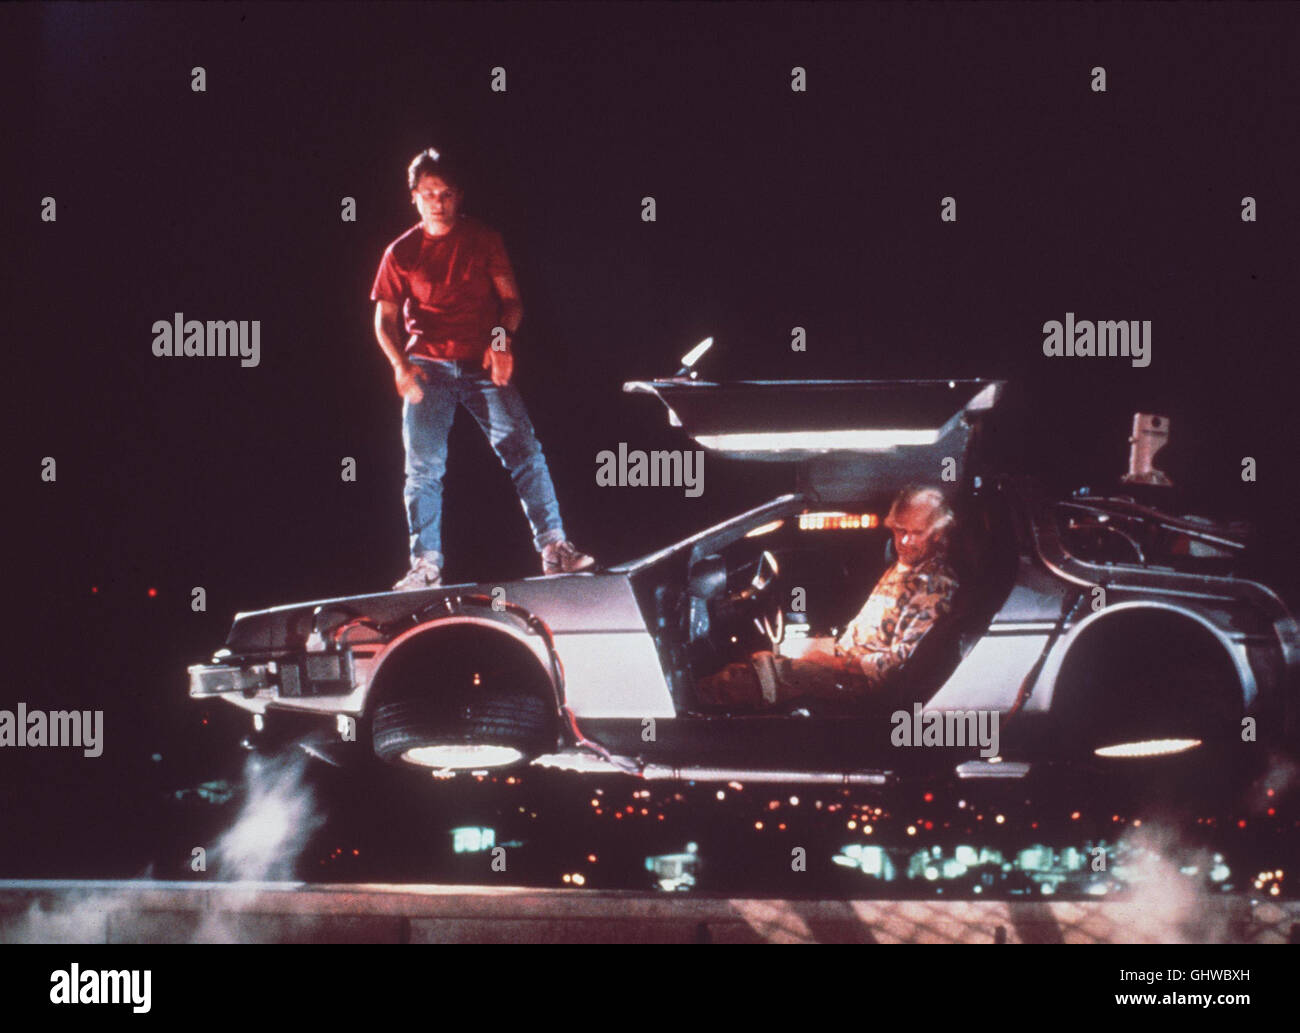 Zurück in die Zukunft Back to the Future USA 1985 Michael J. Fox, Christoph Lloyd mit der Zeitmaschine, ein umgebauter Sportwagen vom Typ De Lorean DMC-12. MICHAEL J. FOX CHRISTOPH LLOYD Stock Photo